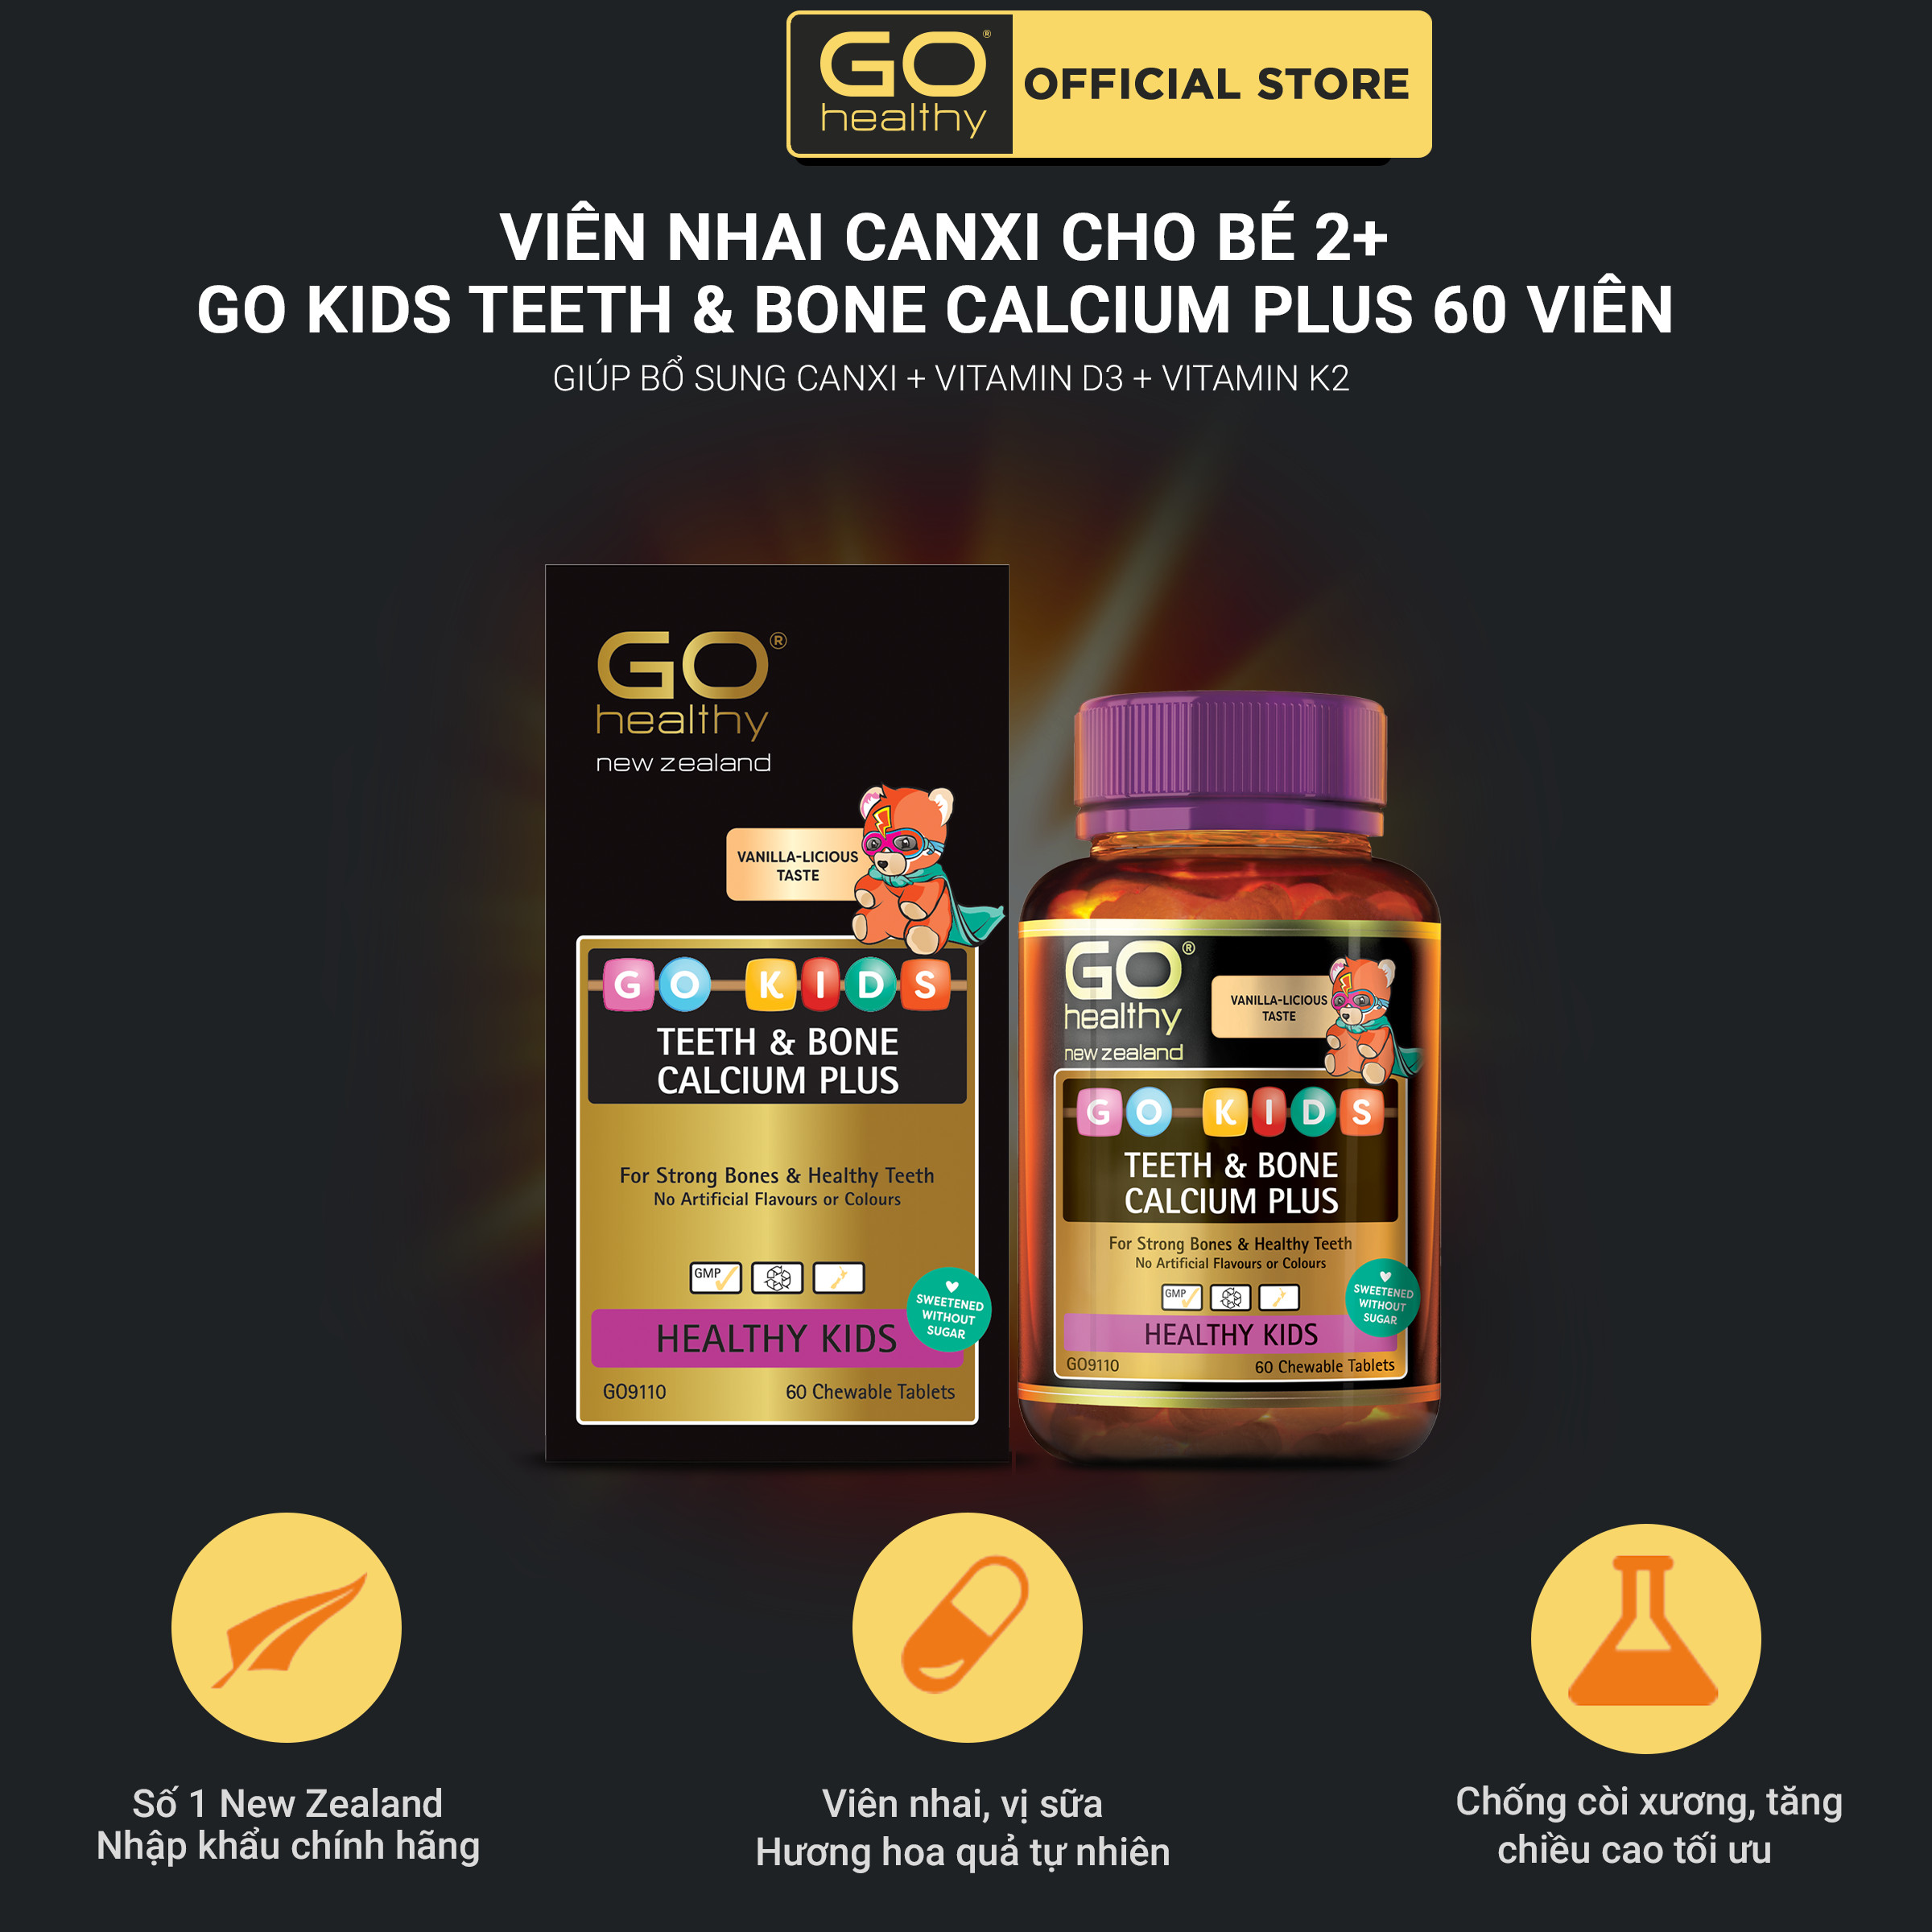 GO KIDS TEETH & BONE CALCIUM PLUS 60 VIÊN - Viên canxi nhai cho trẻ nhập khẩu chính hãng GO Healthy New Zealand